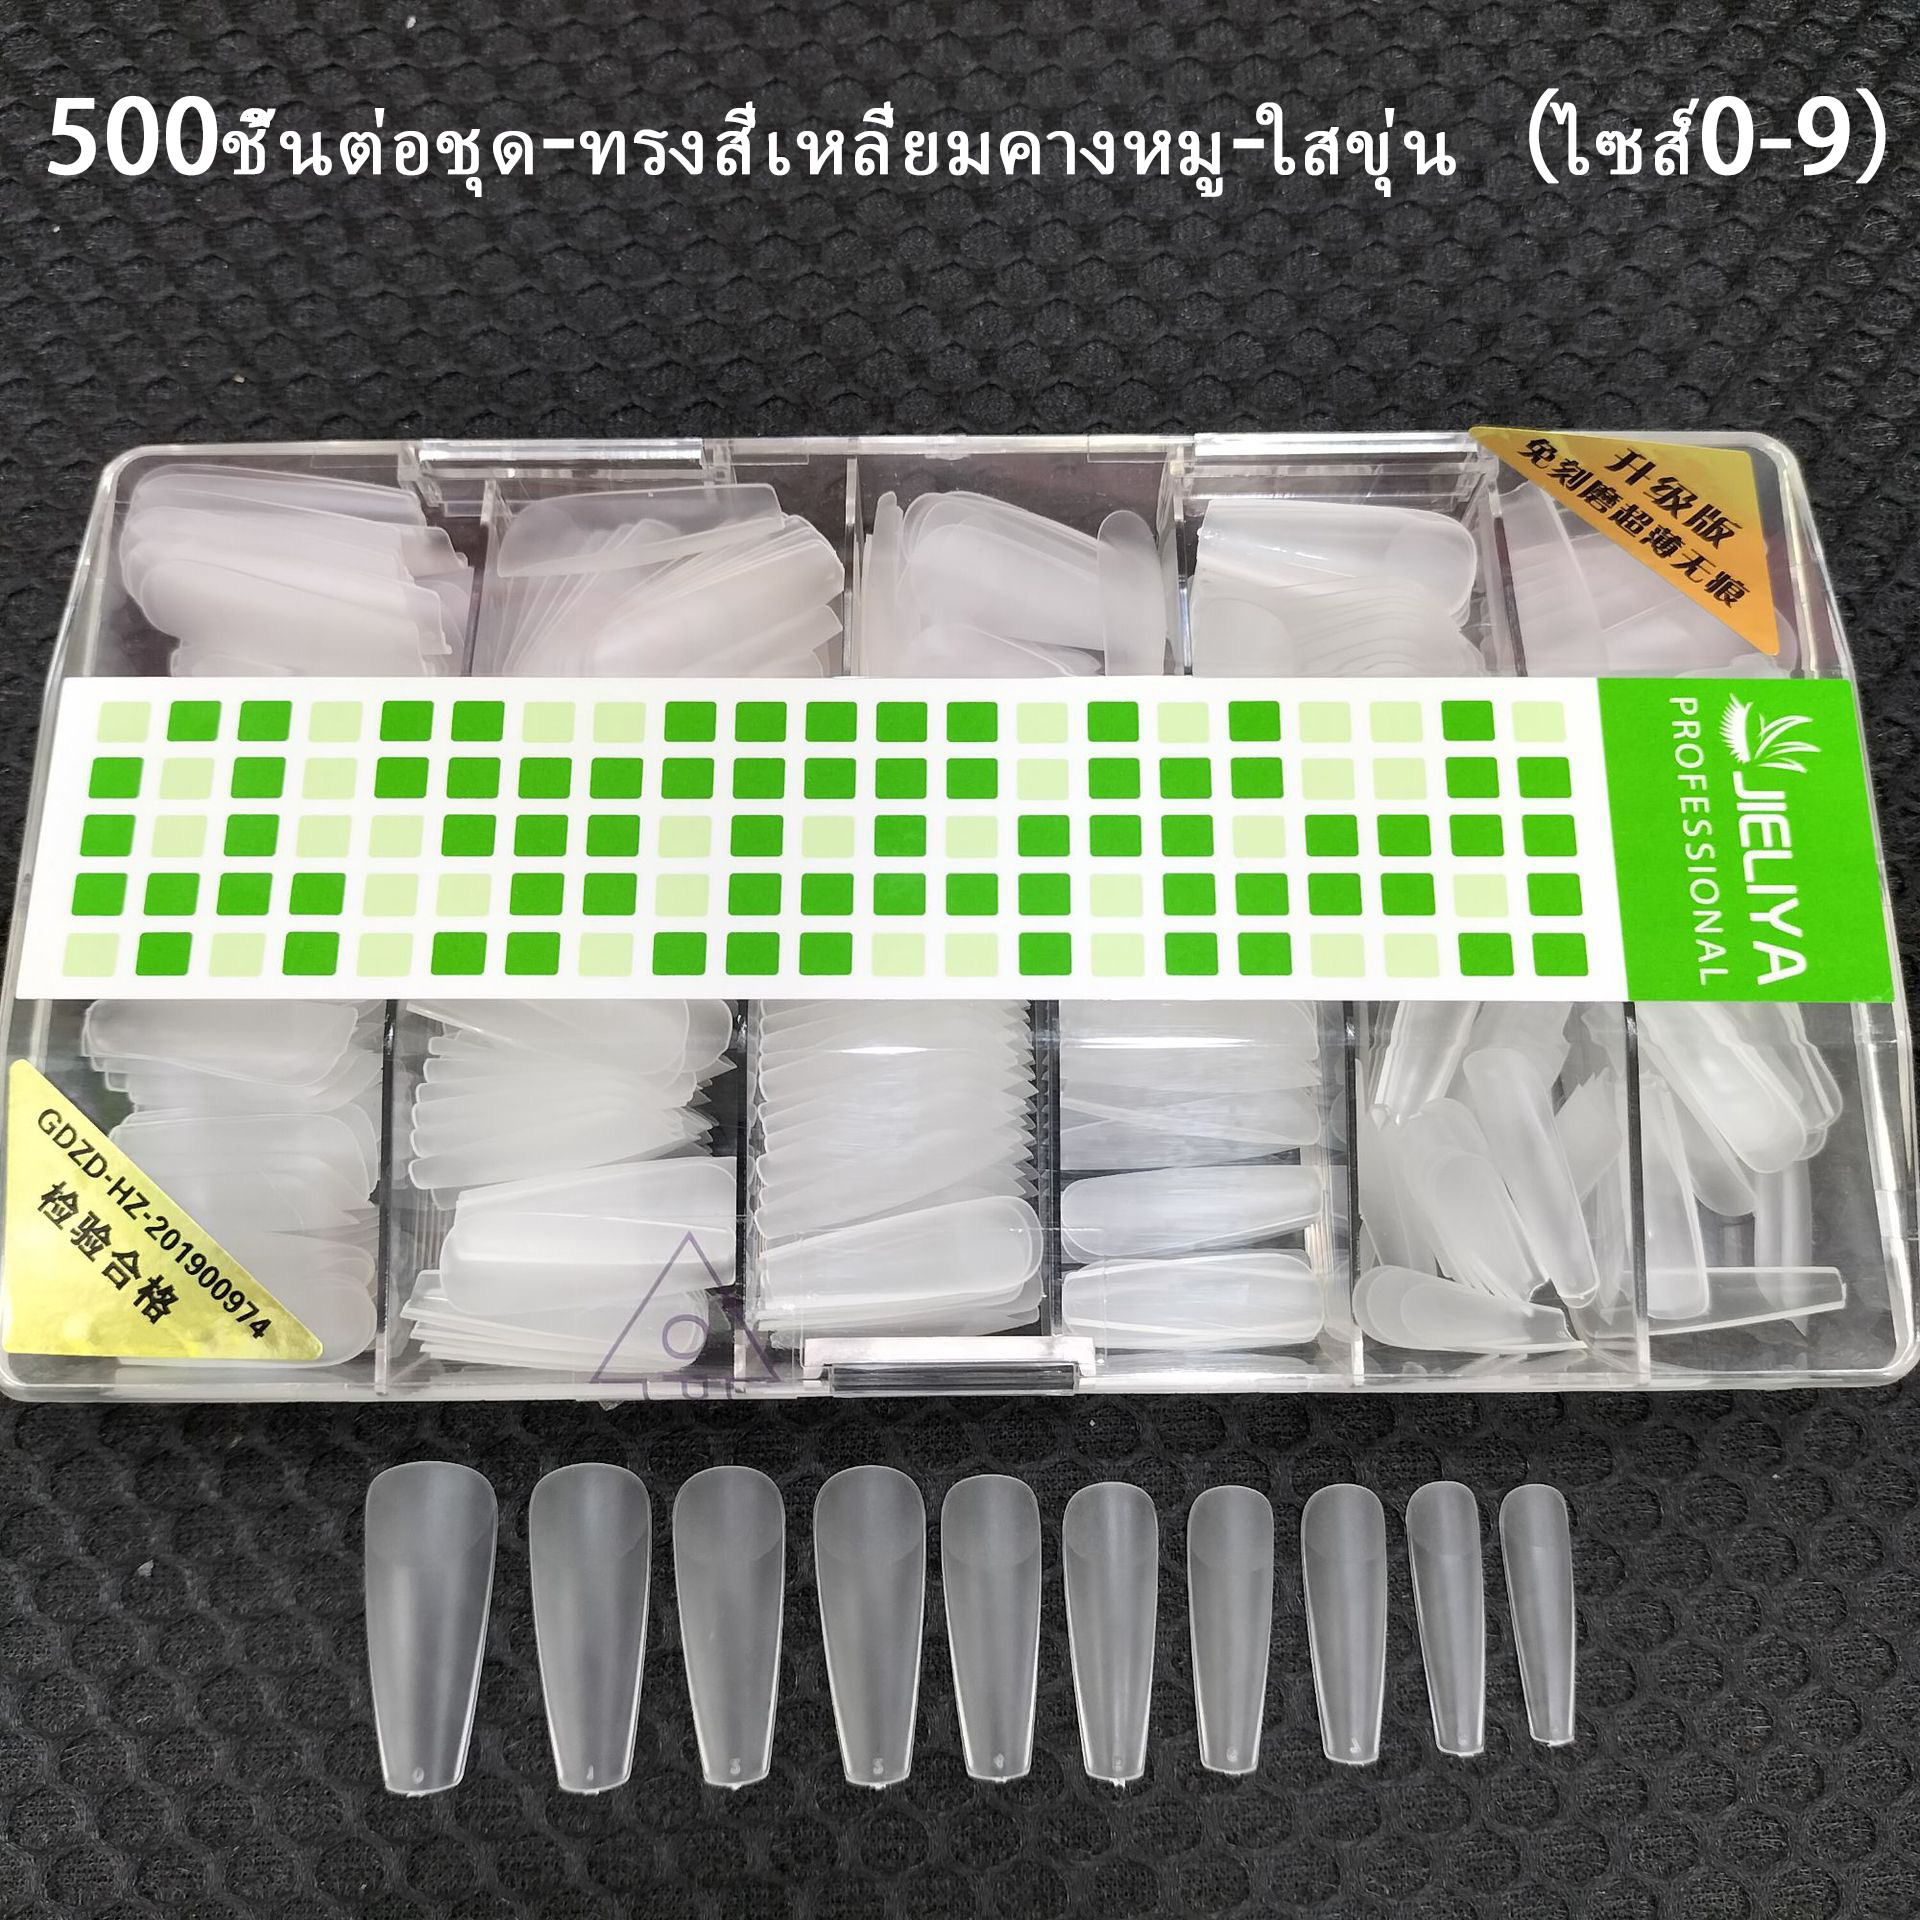 เกี่ยวกับสินค้า ที่ติดเล็บสวยๆ เล็บปลอม เล็บPVCต่อเล็บ ทรงสั้น ทรงยาวกลาง ทรงเหลี่ยม กล่องละ100ชิ้น/500ชิ้น 10ขนาด พร้อมส่งในไทย